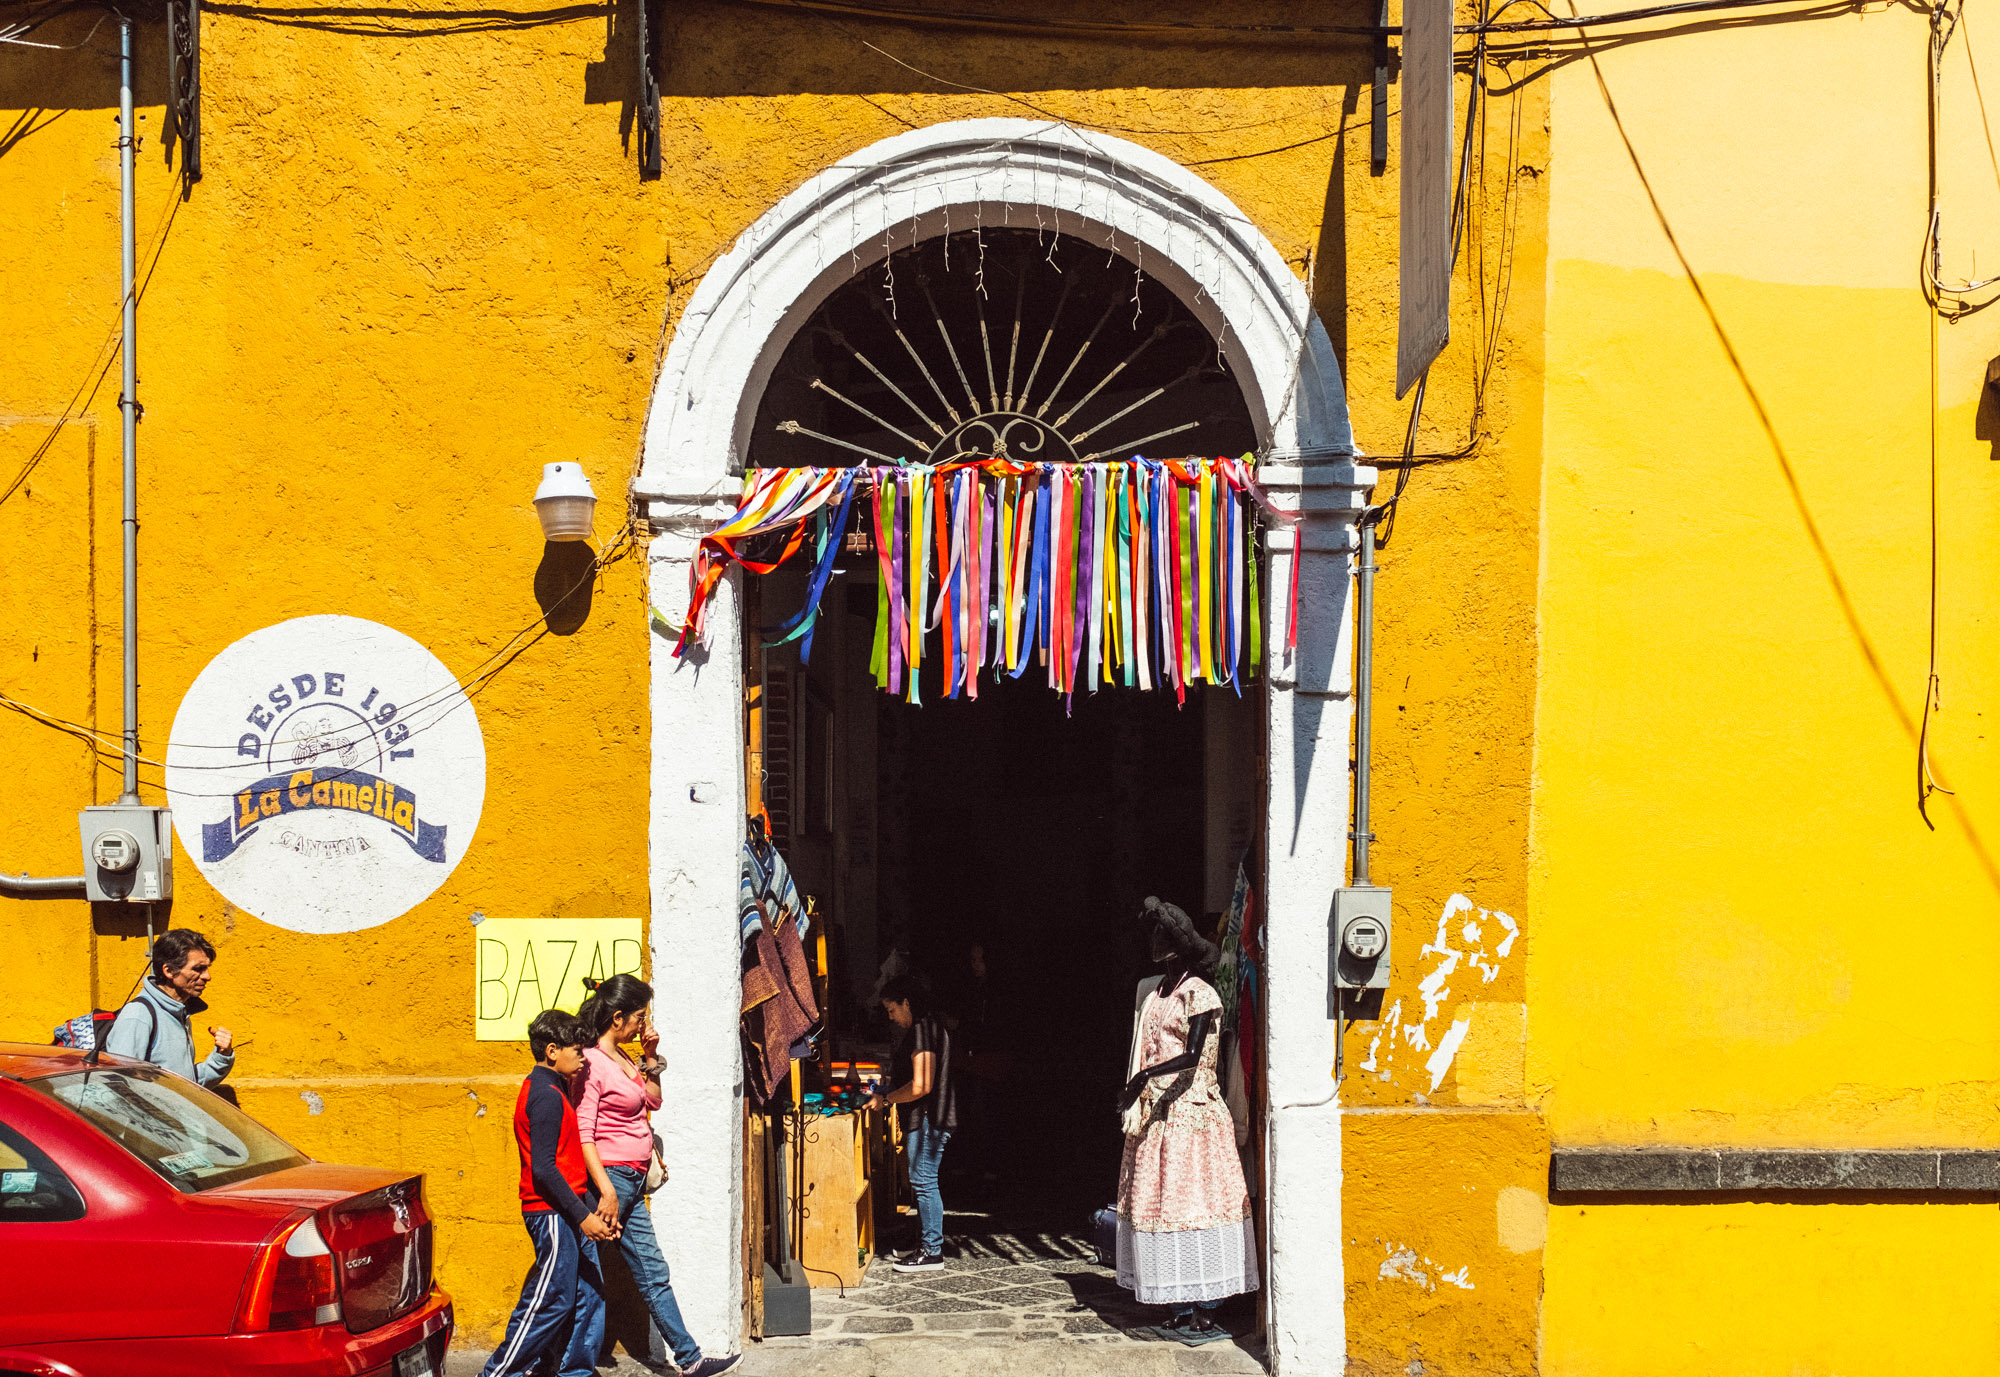 El Bazar Sabado in Mexico City